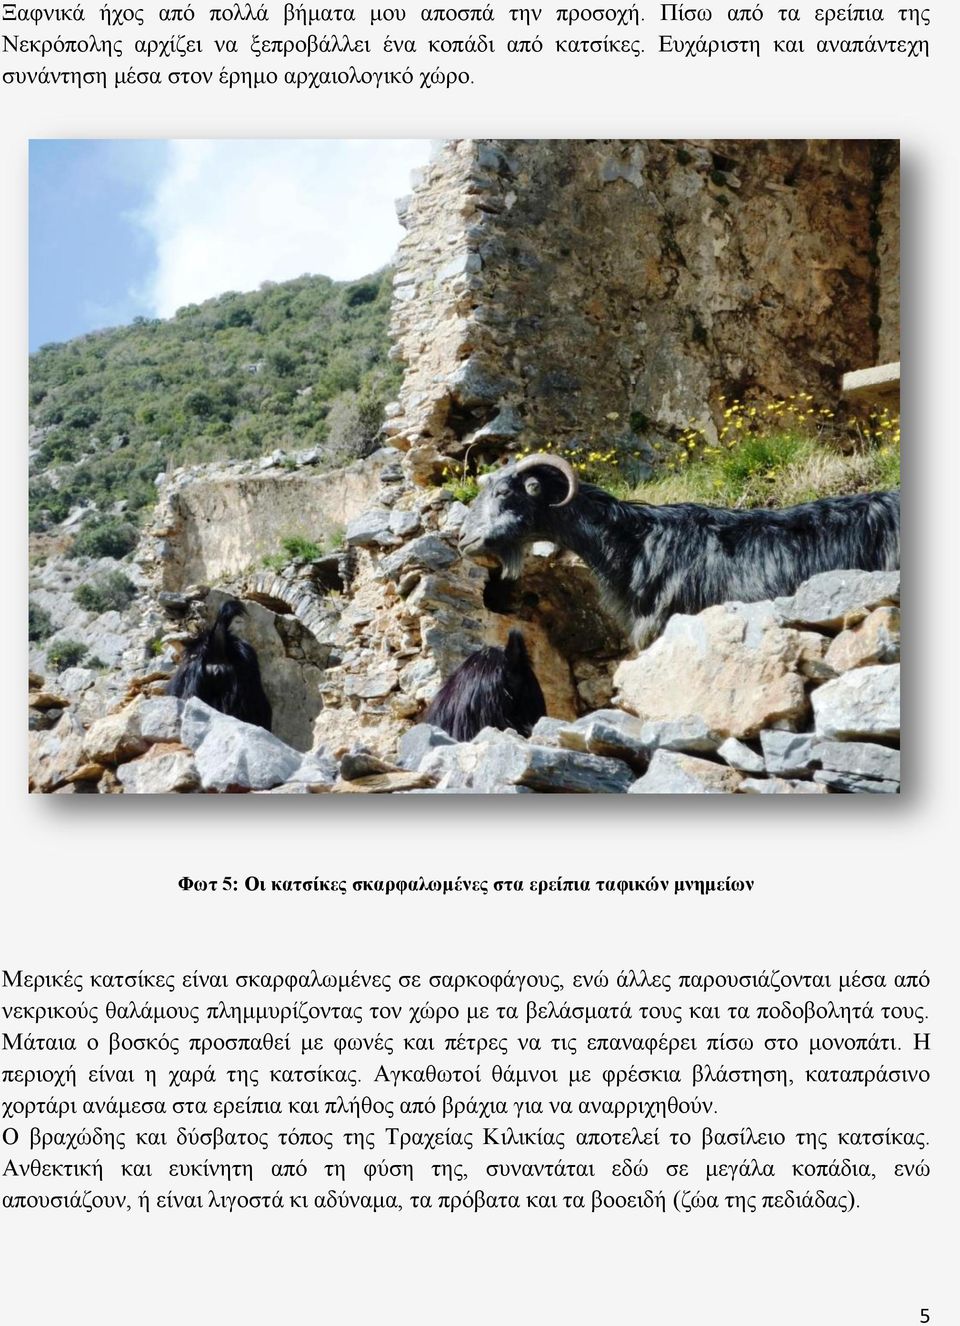 Φωτ 5: Οι κατσίκες σκαρφαλωμένες στα ερείπια ταφικών μνημείων Μερικές κατσίκες είναι σκαρφαλωμένες σε σαρκοφάγους, ενώ άλλες παρουσιάζονται μέσα από νεκρικούς θαλάμους πλημμυρίζοντας τον χώρο με τα